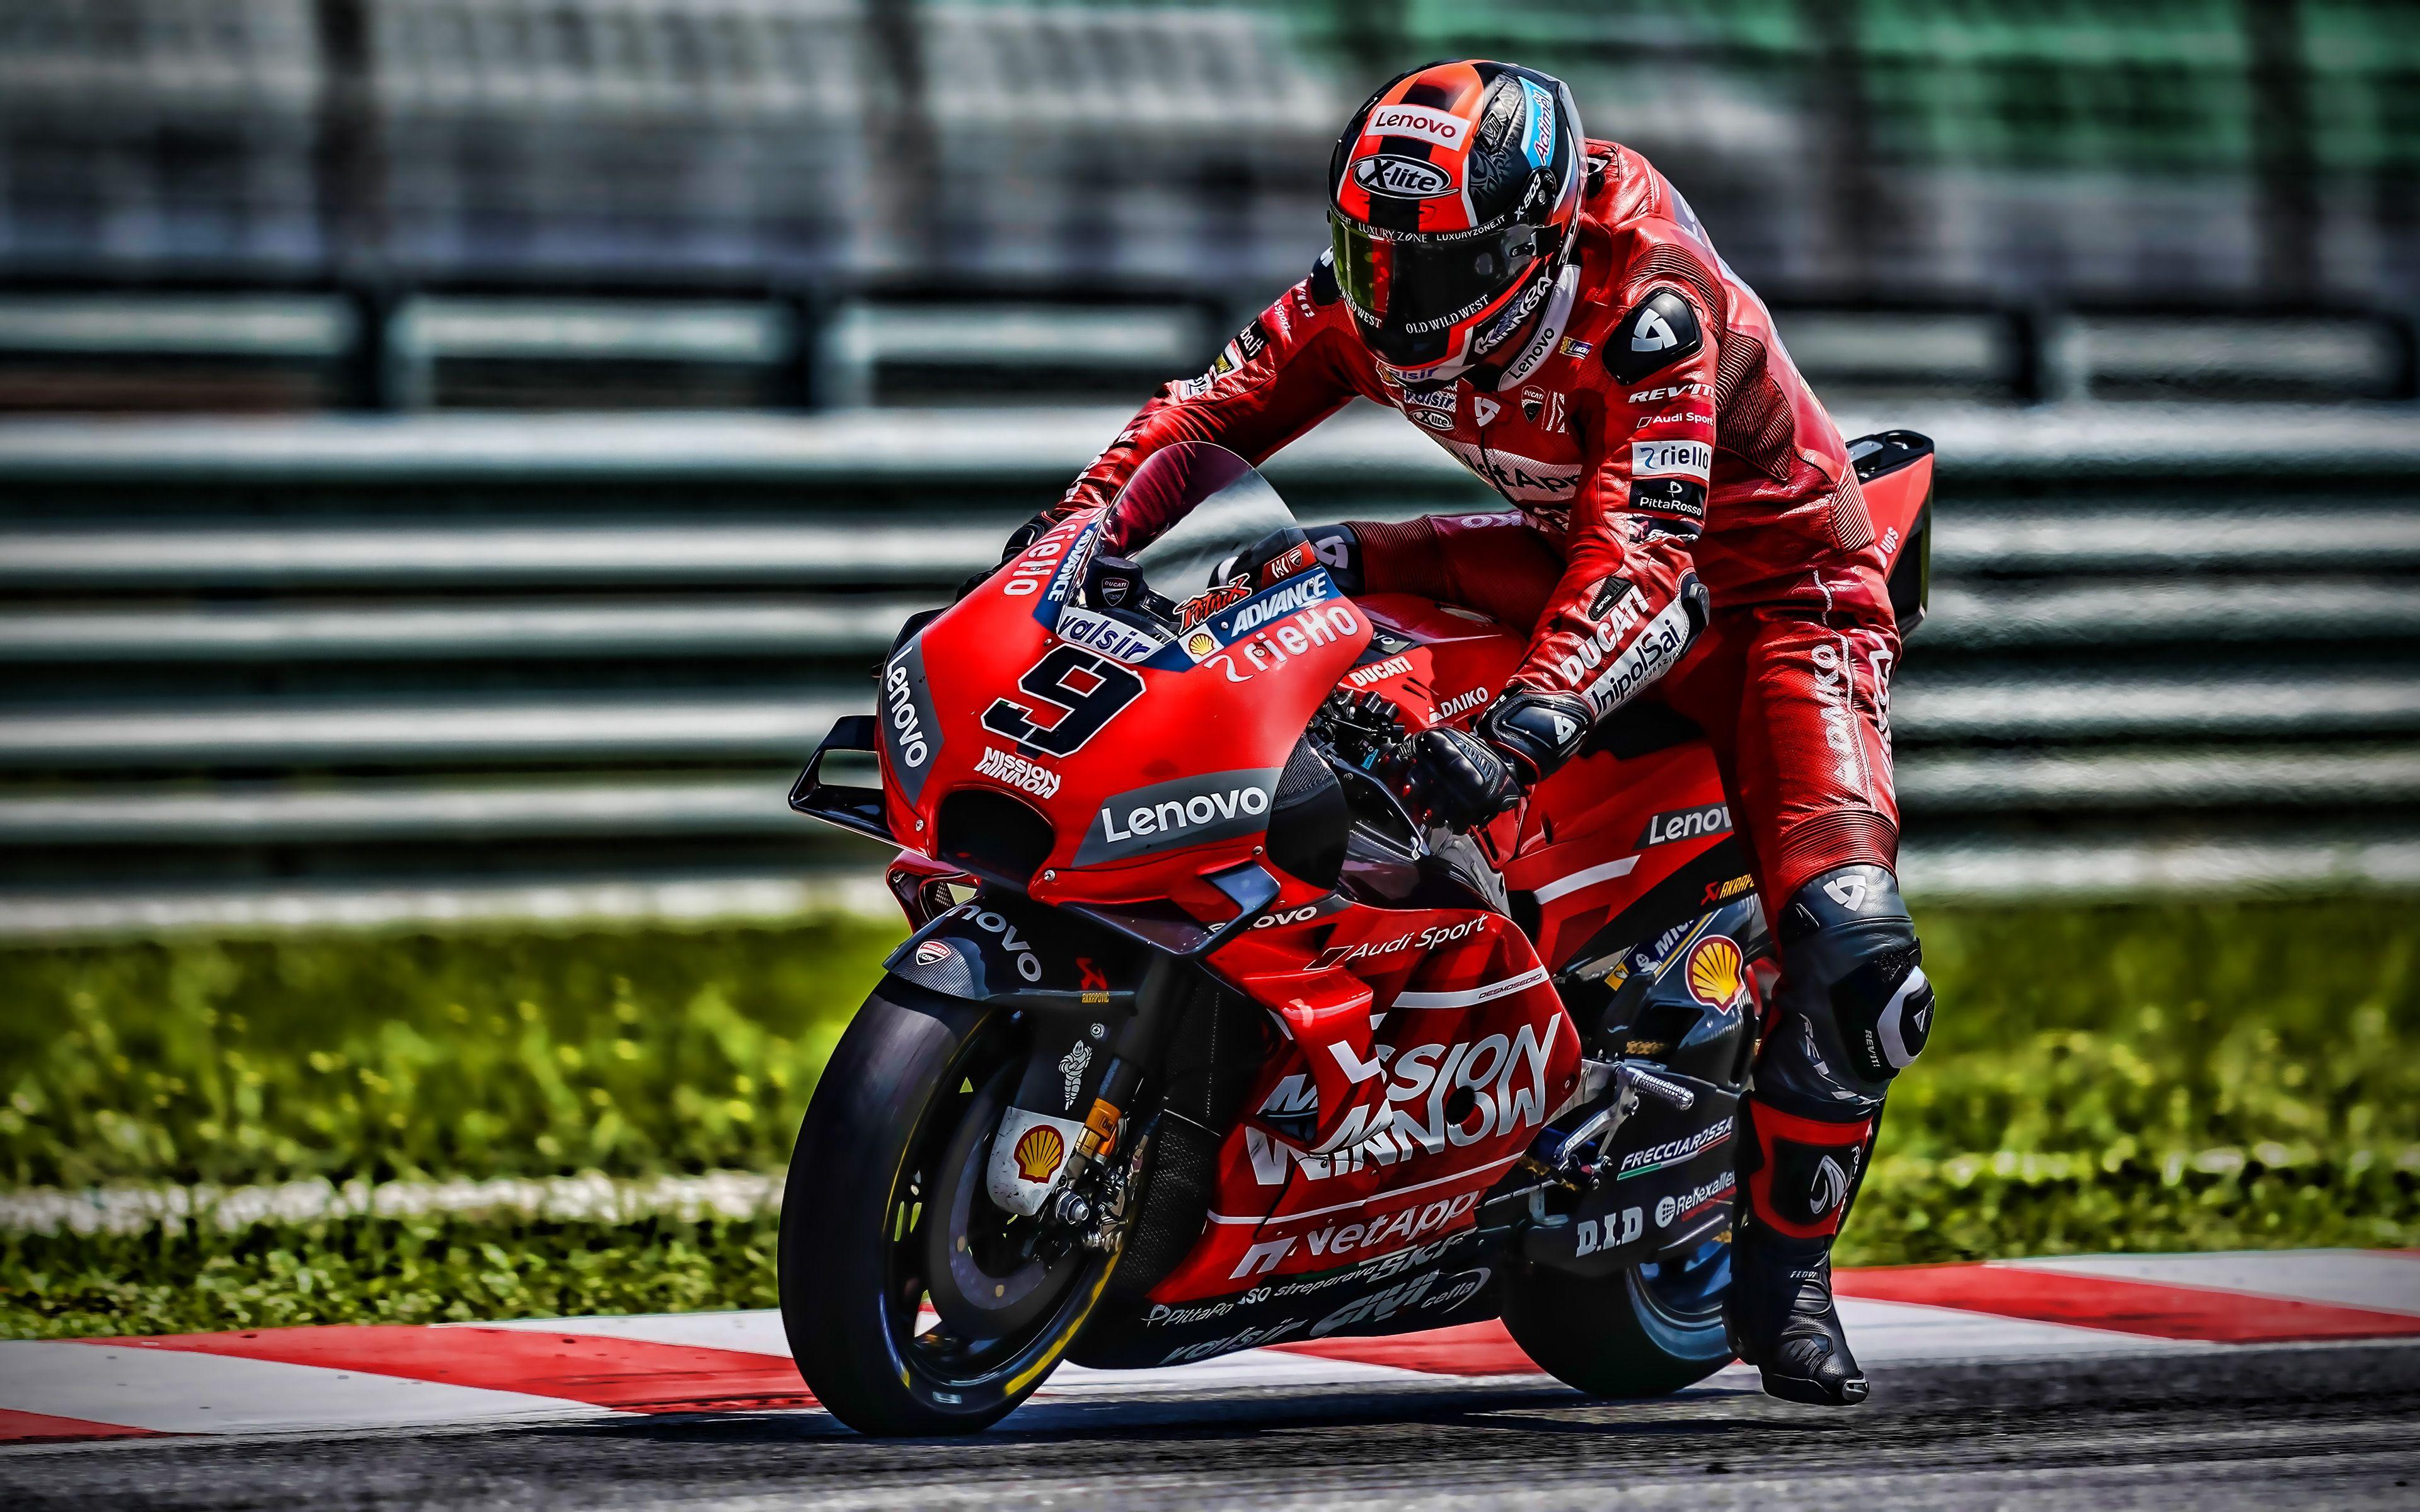 Ducati Motogp Wallpapers Top Free Ducati Motogp Backgrounds Wallpaperaccess